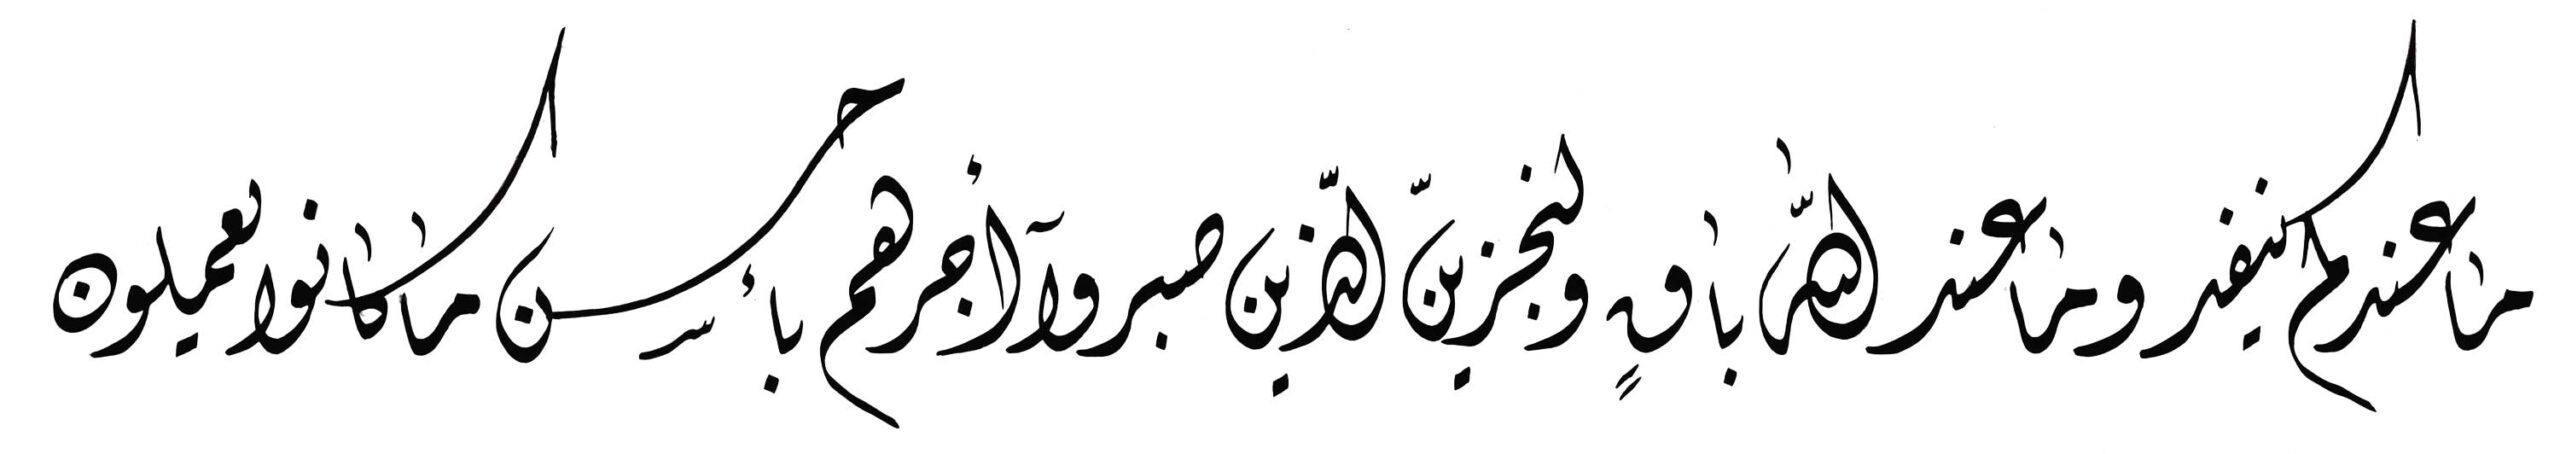 Al Nahl 16 96 Diwani